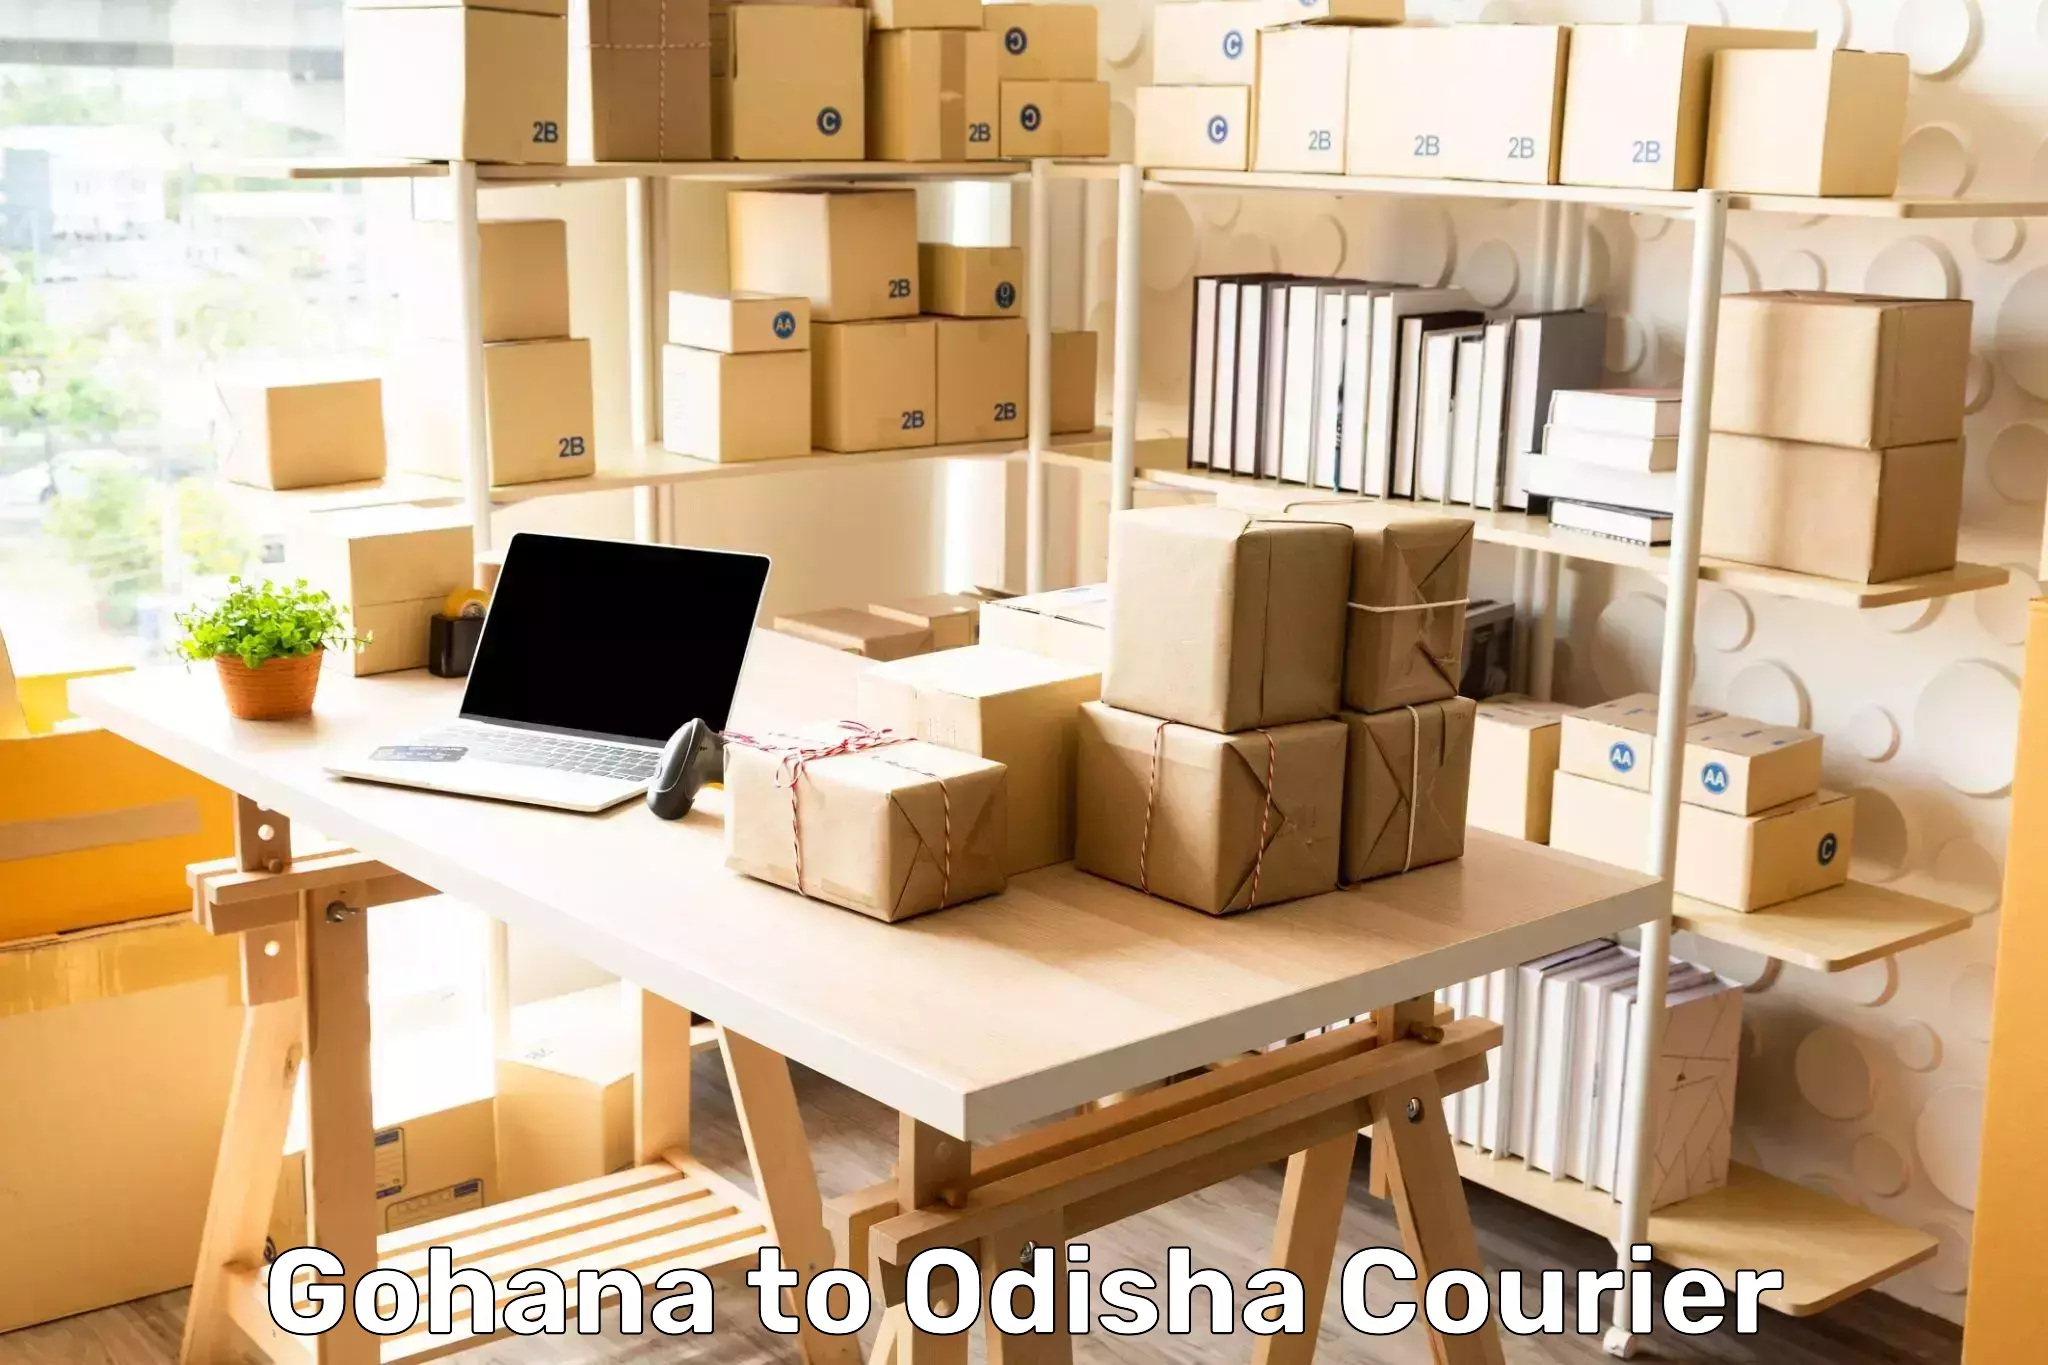 Seamless shipping experience Gohana to Loisingha